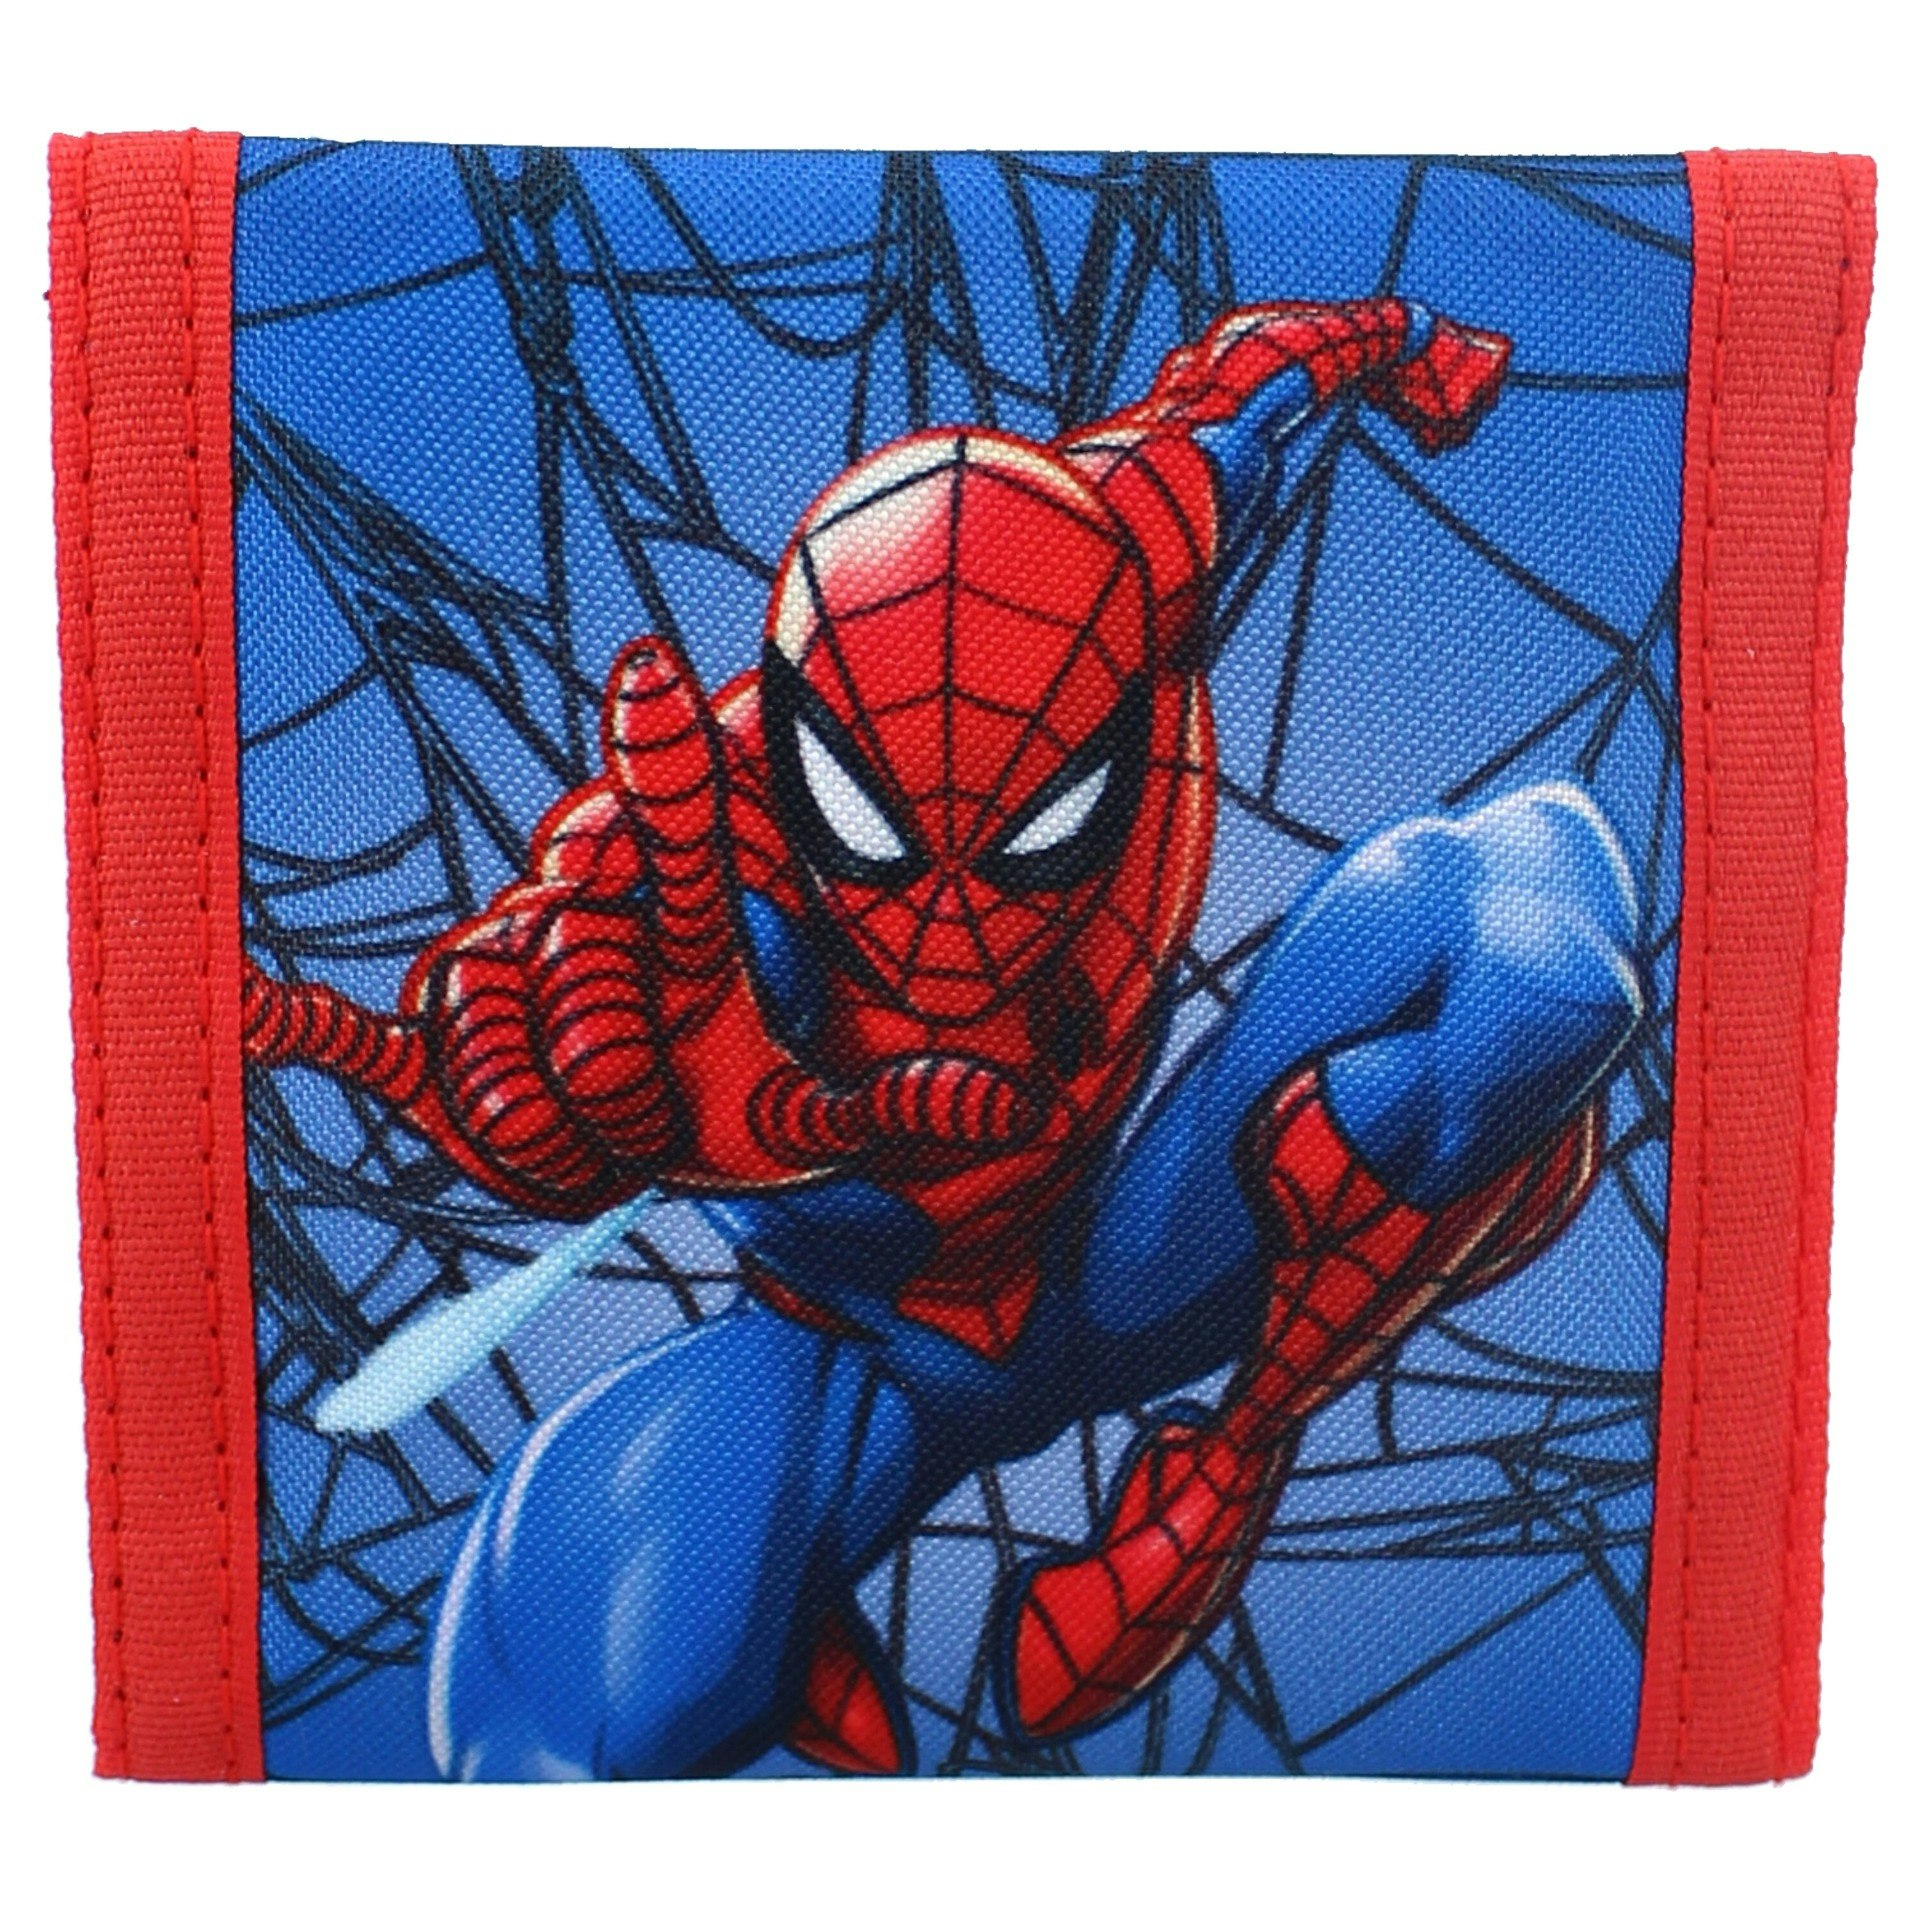 Spiderman Barn- plånbok 10x10 cm